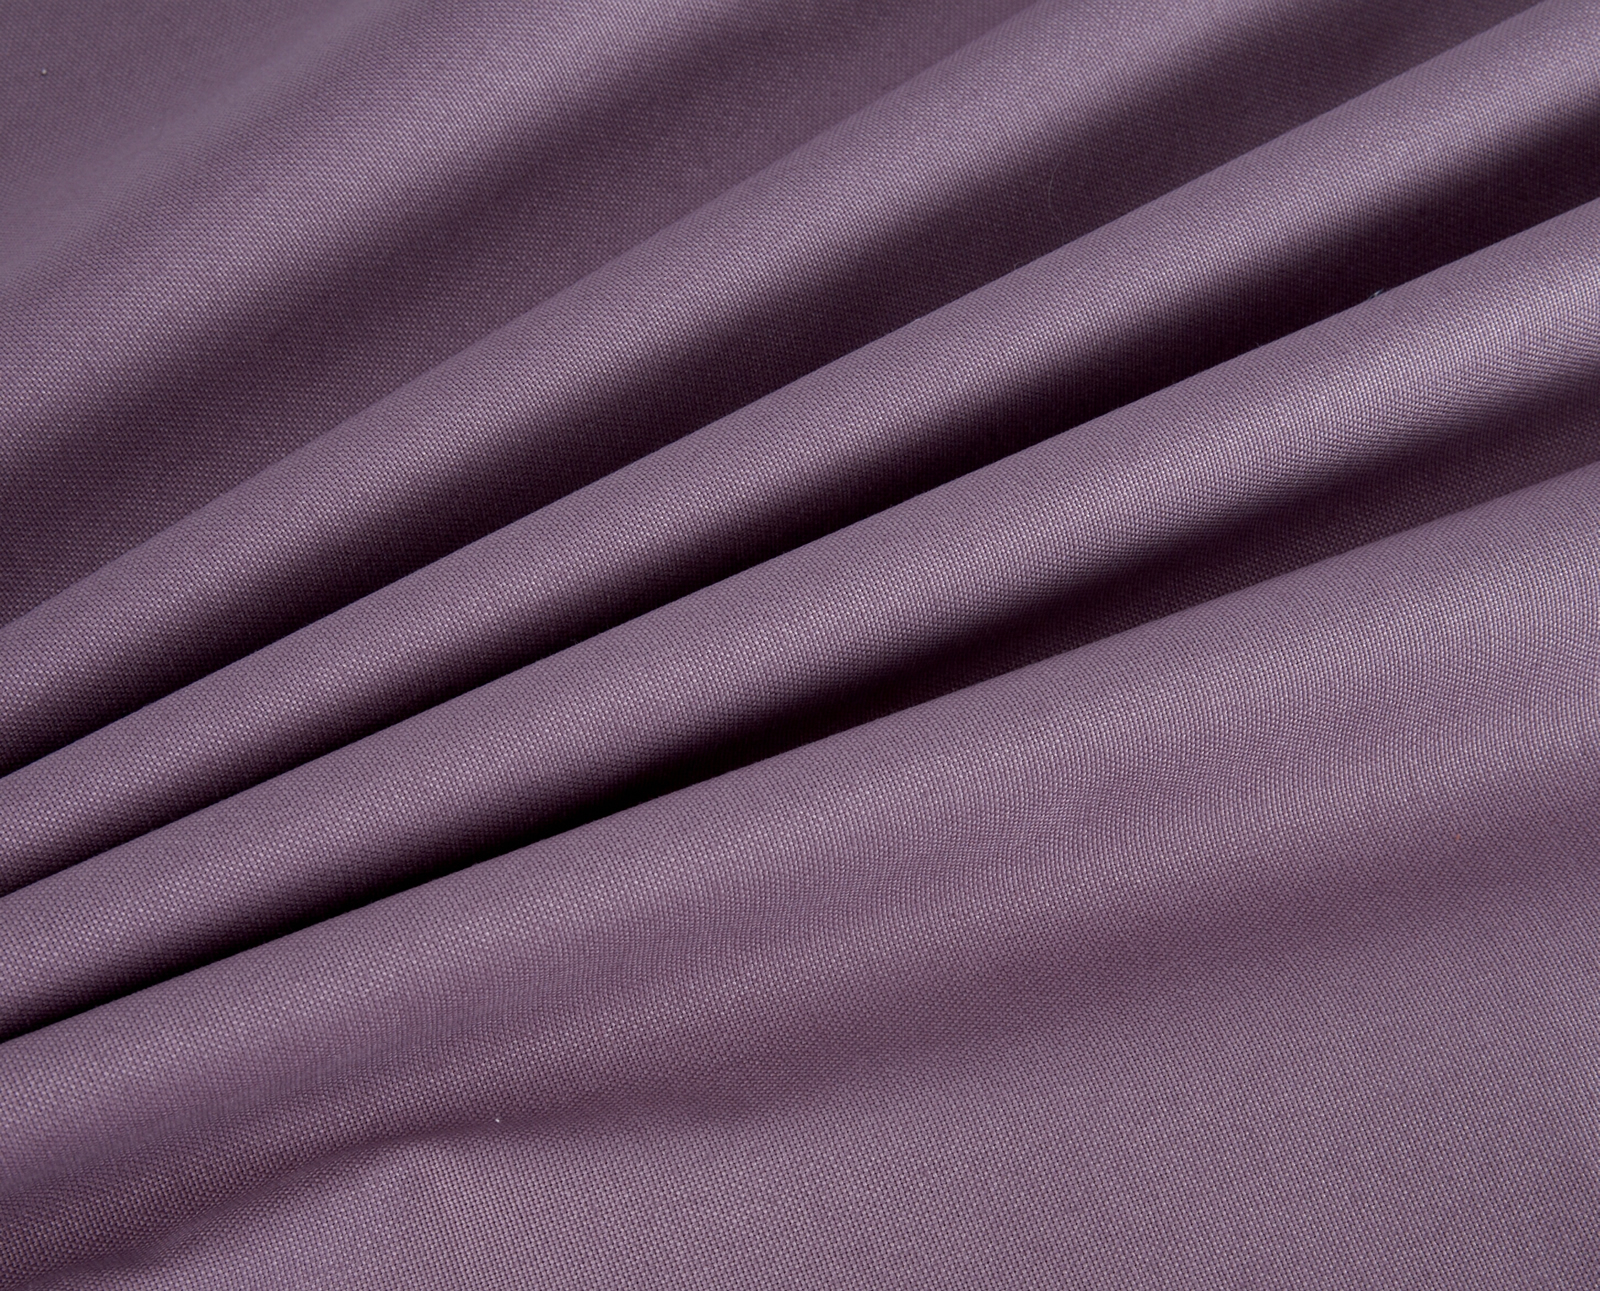 Deluxe Soft Canvas - Lavender Purple (price per half metre)